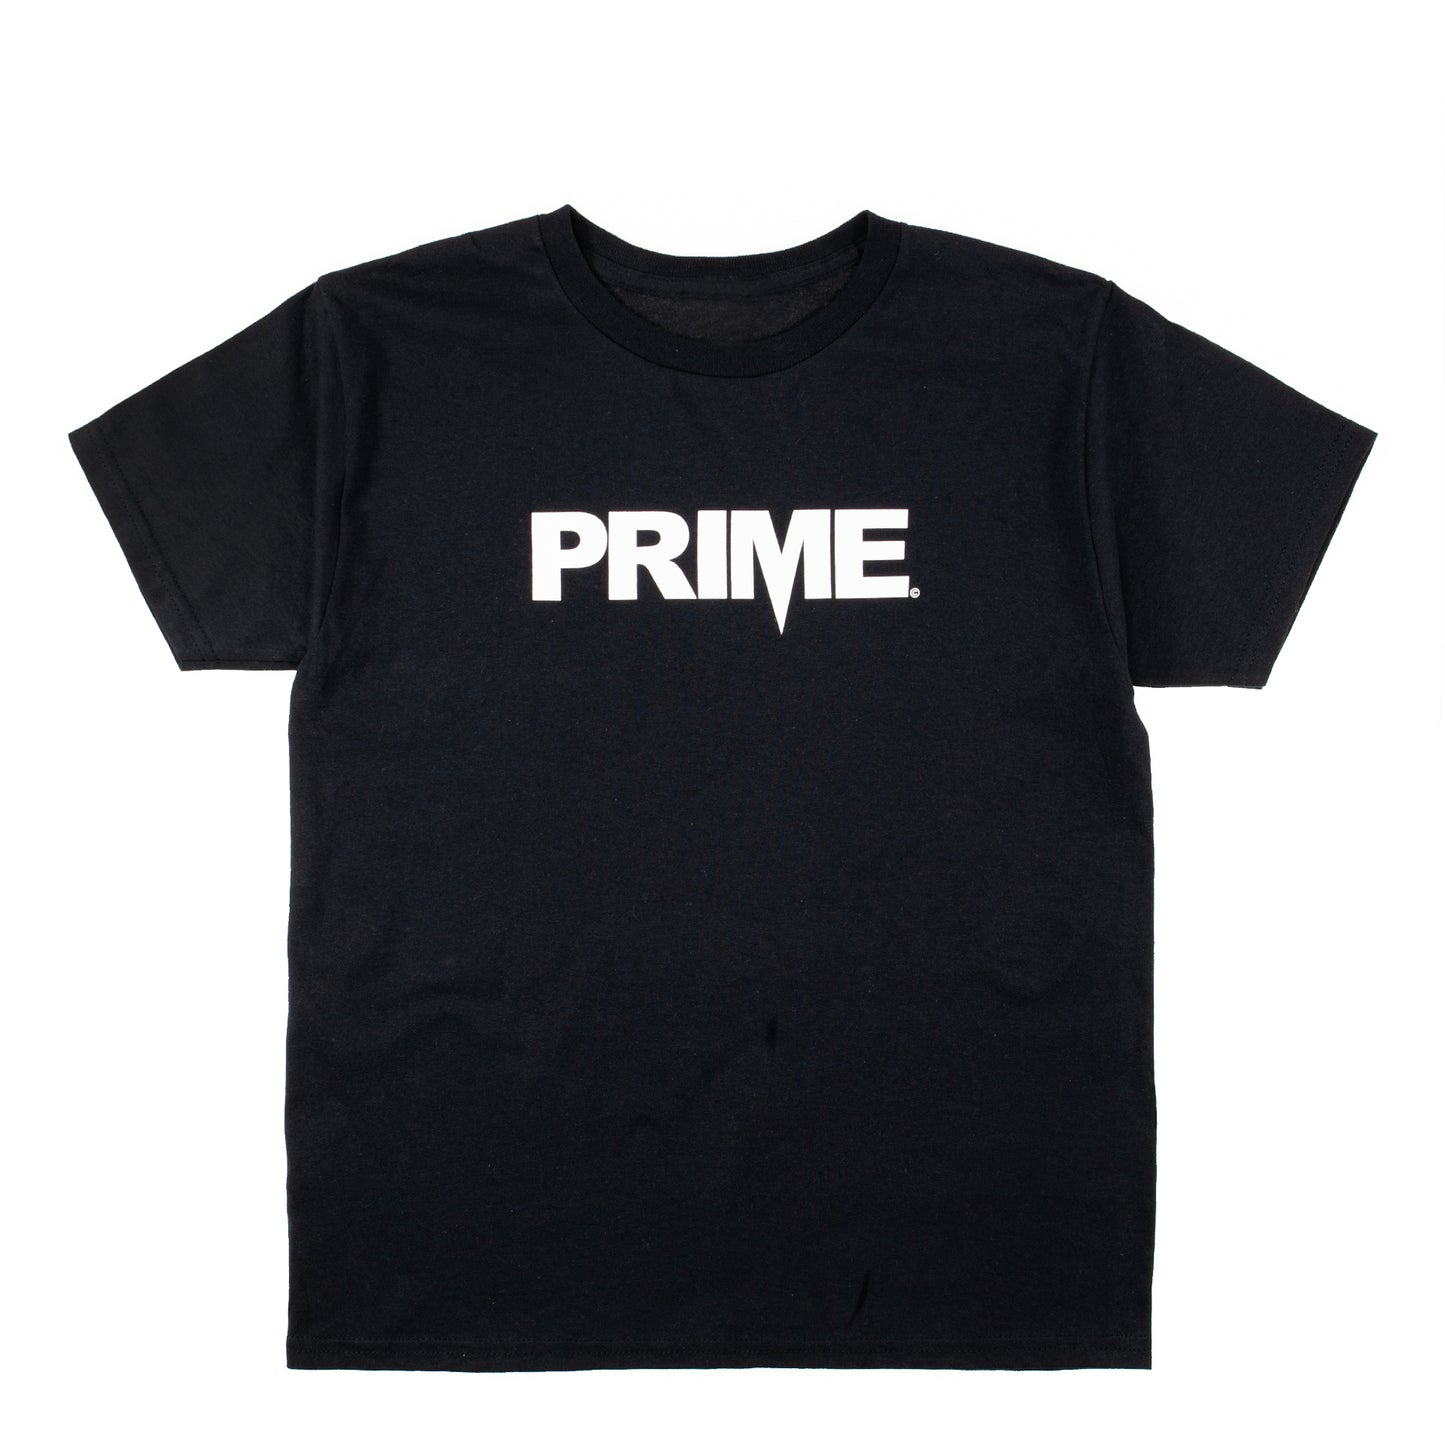 Prime Delux OG Logo Kids T Shirt - Black / White - Prime Delux Store